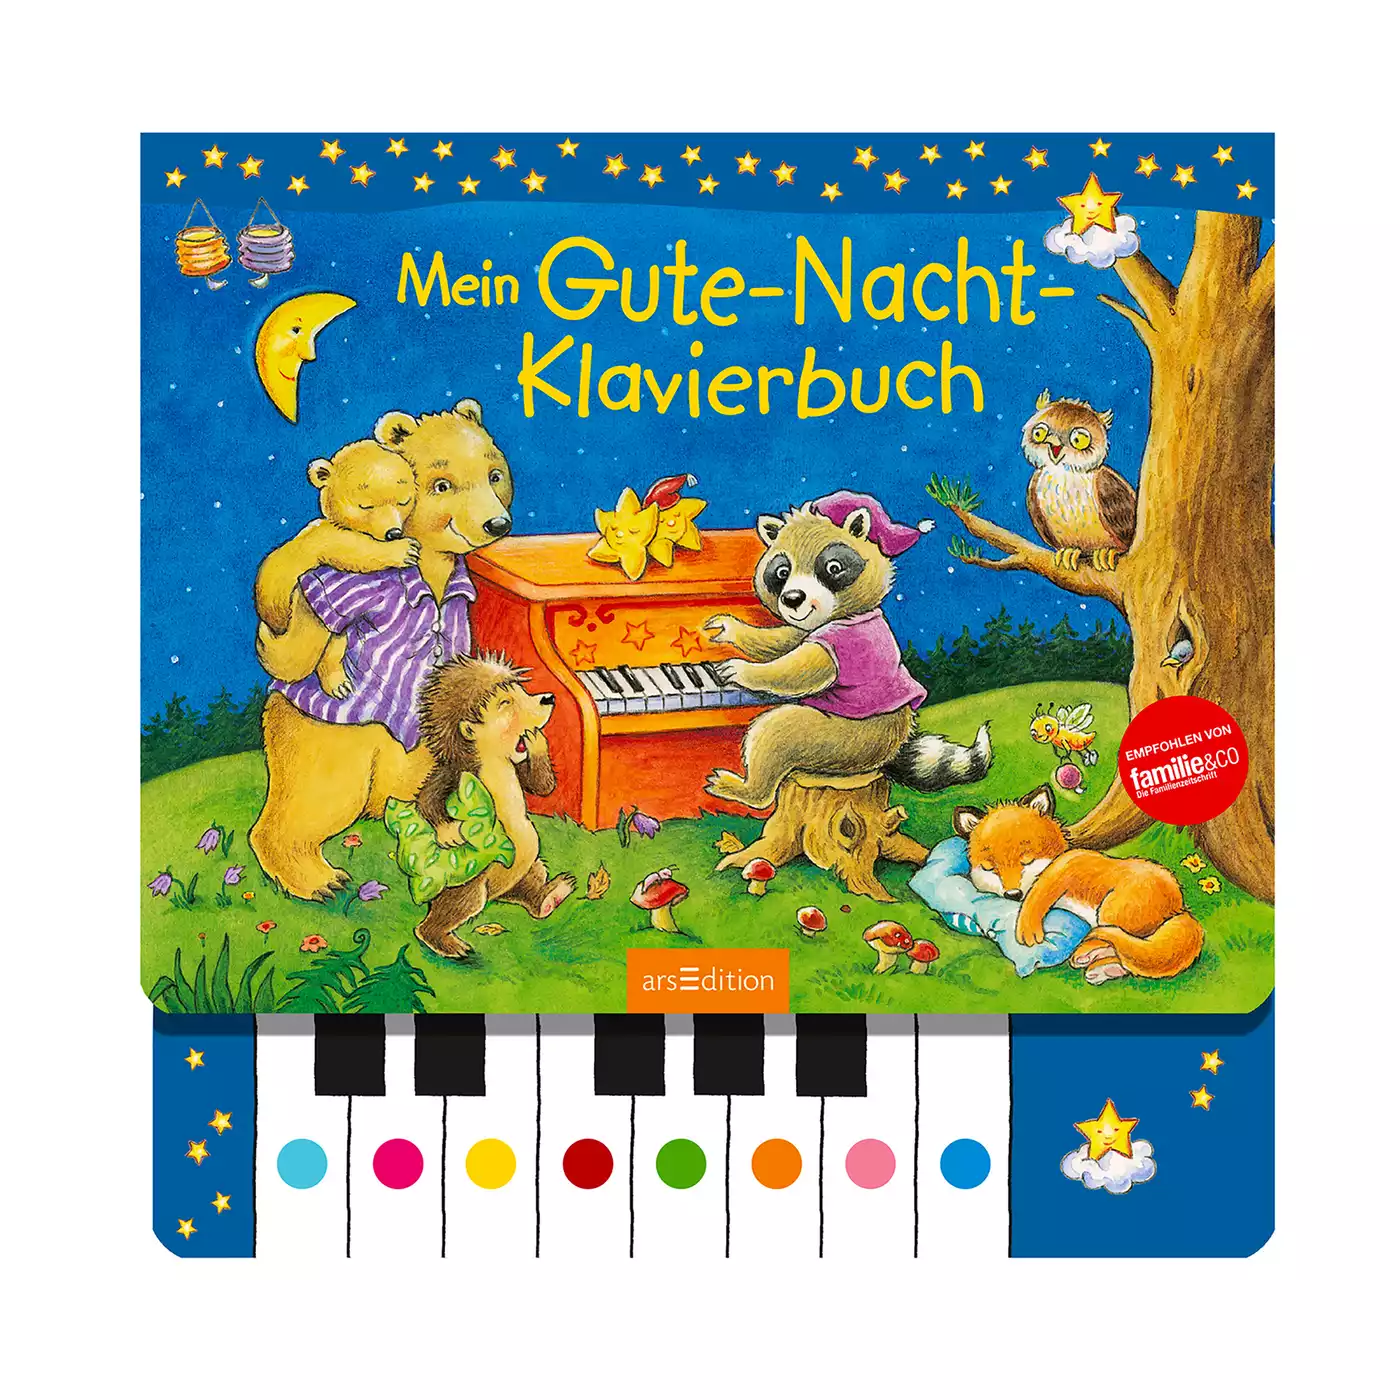 Mein Gute-Nacht-Klavierbuch arsEdition 2000574913766 3